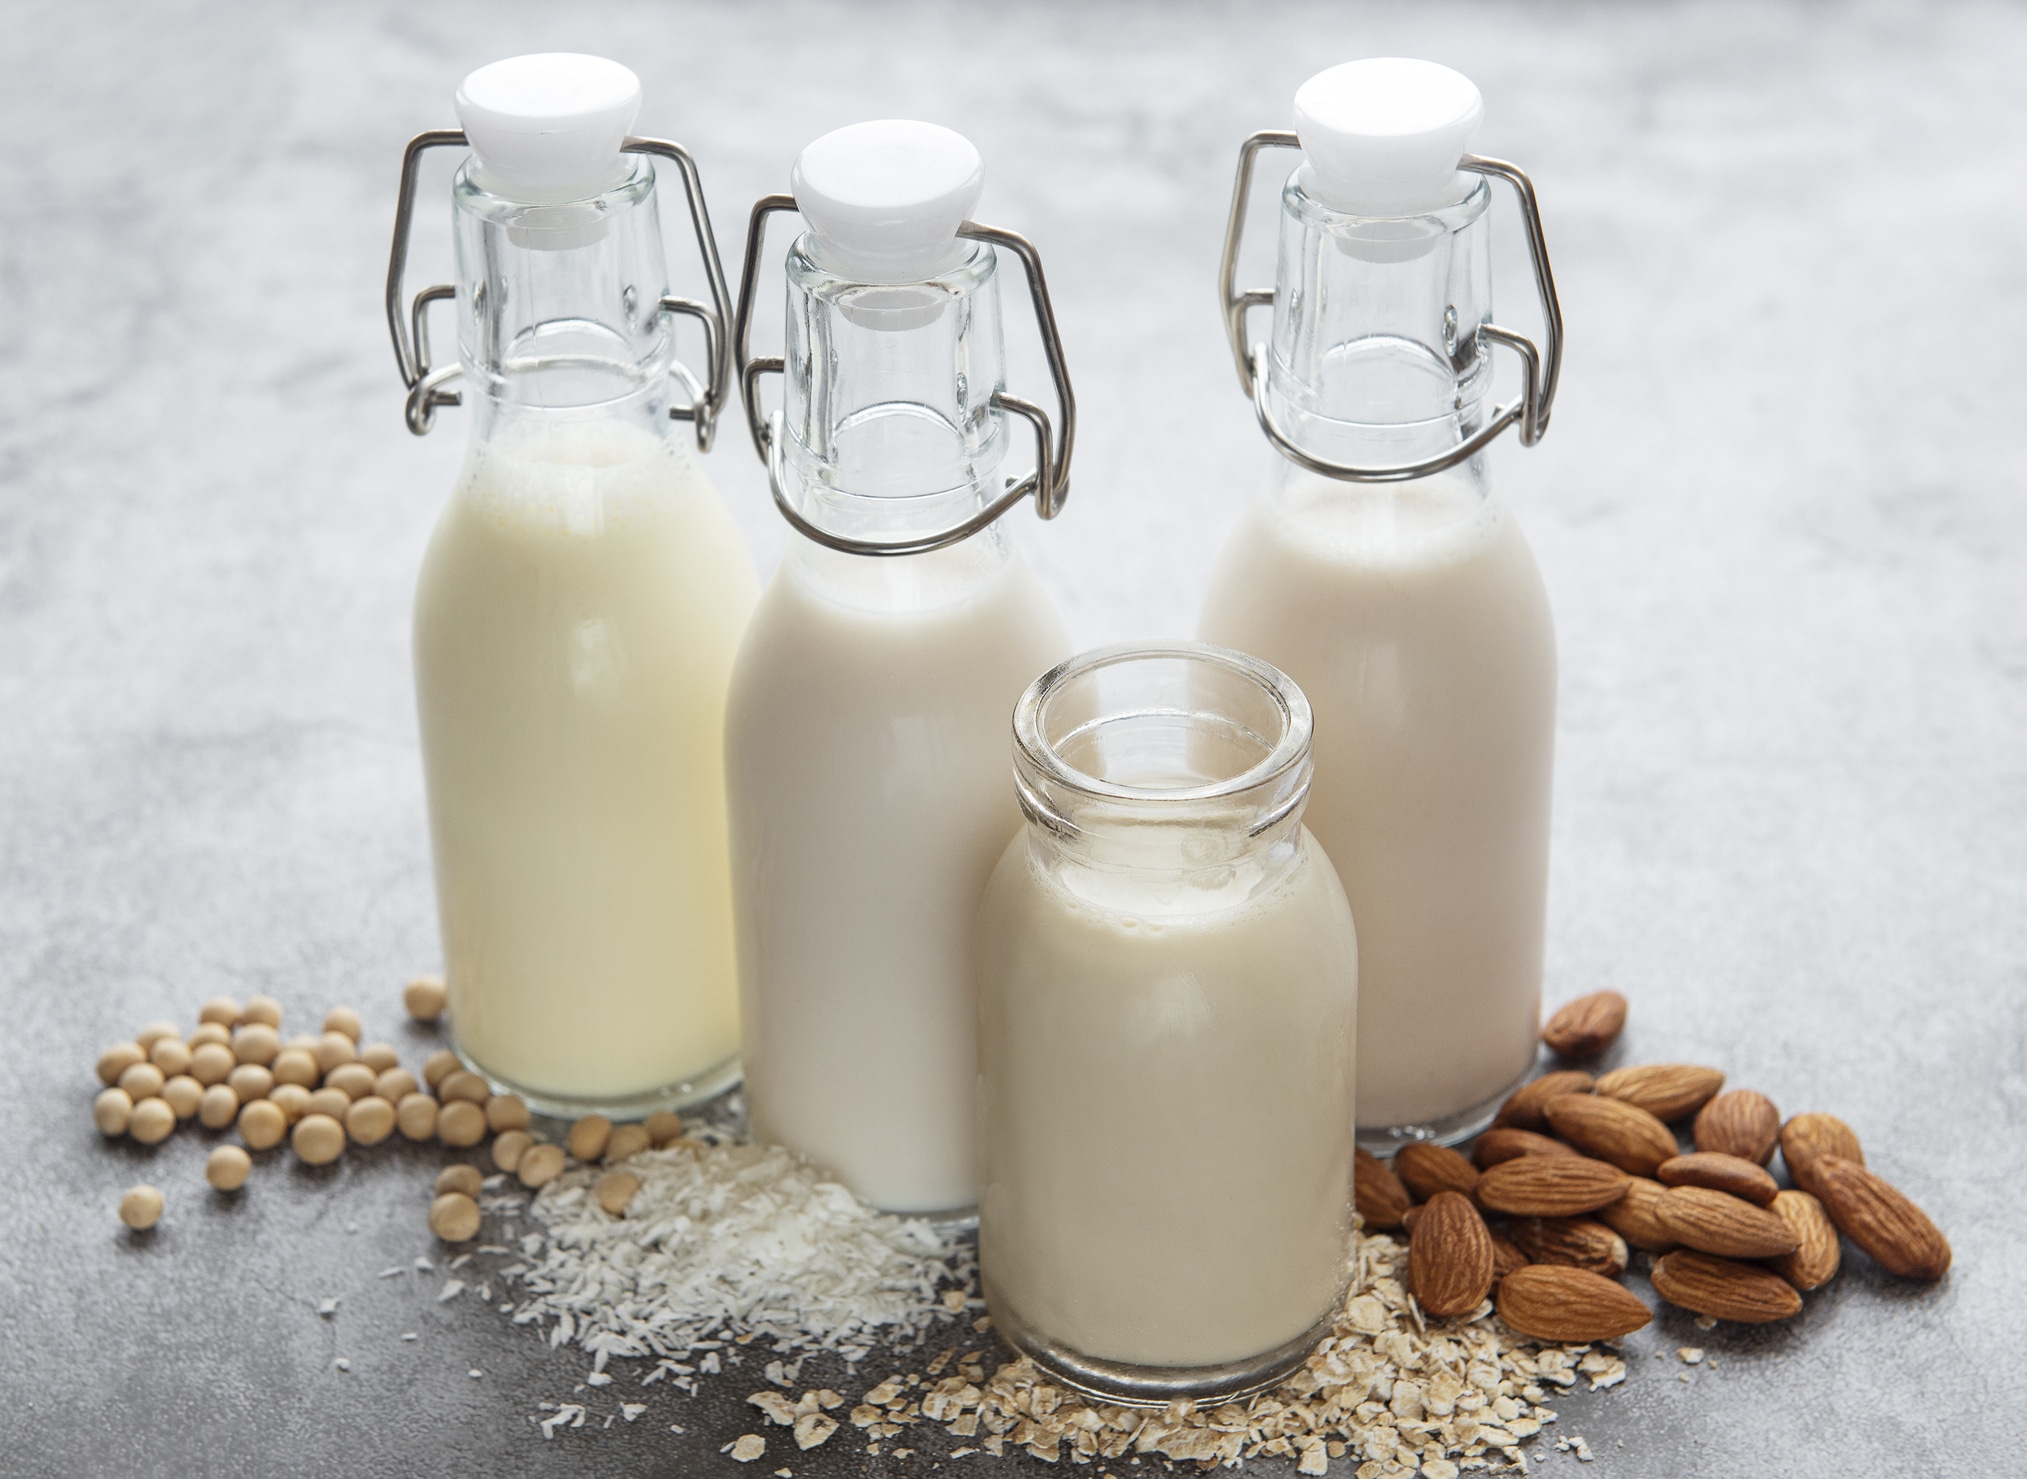 Növényi alapú tejek felsorakoztatva, például mandulatej, rizstej és zabtej.